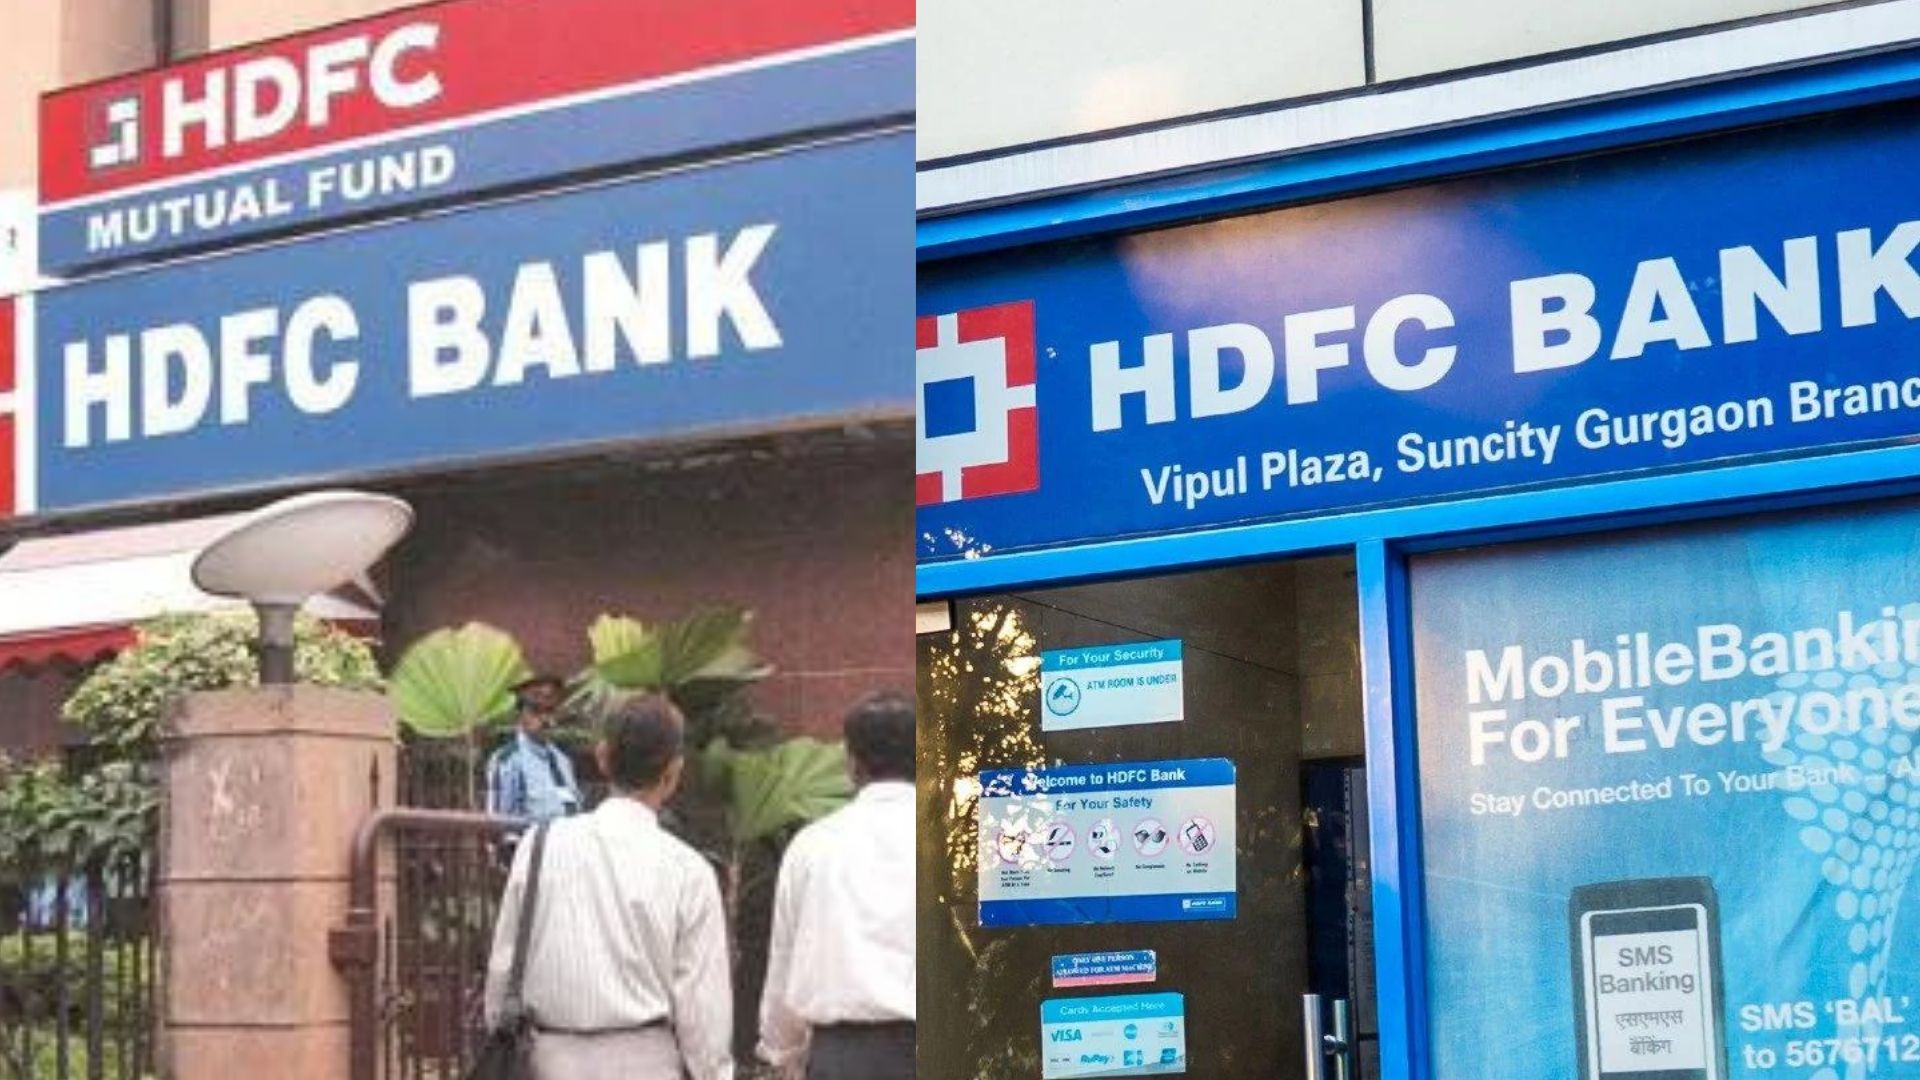 भारत के सबसे बड़े बिजनस मर्जर को RBI की मंजूरी, जल्द एक होंगे HDFC और HDFC बैंक